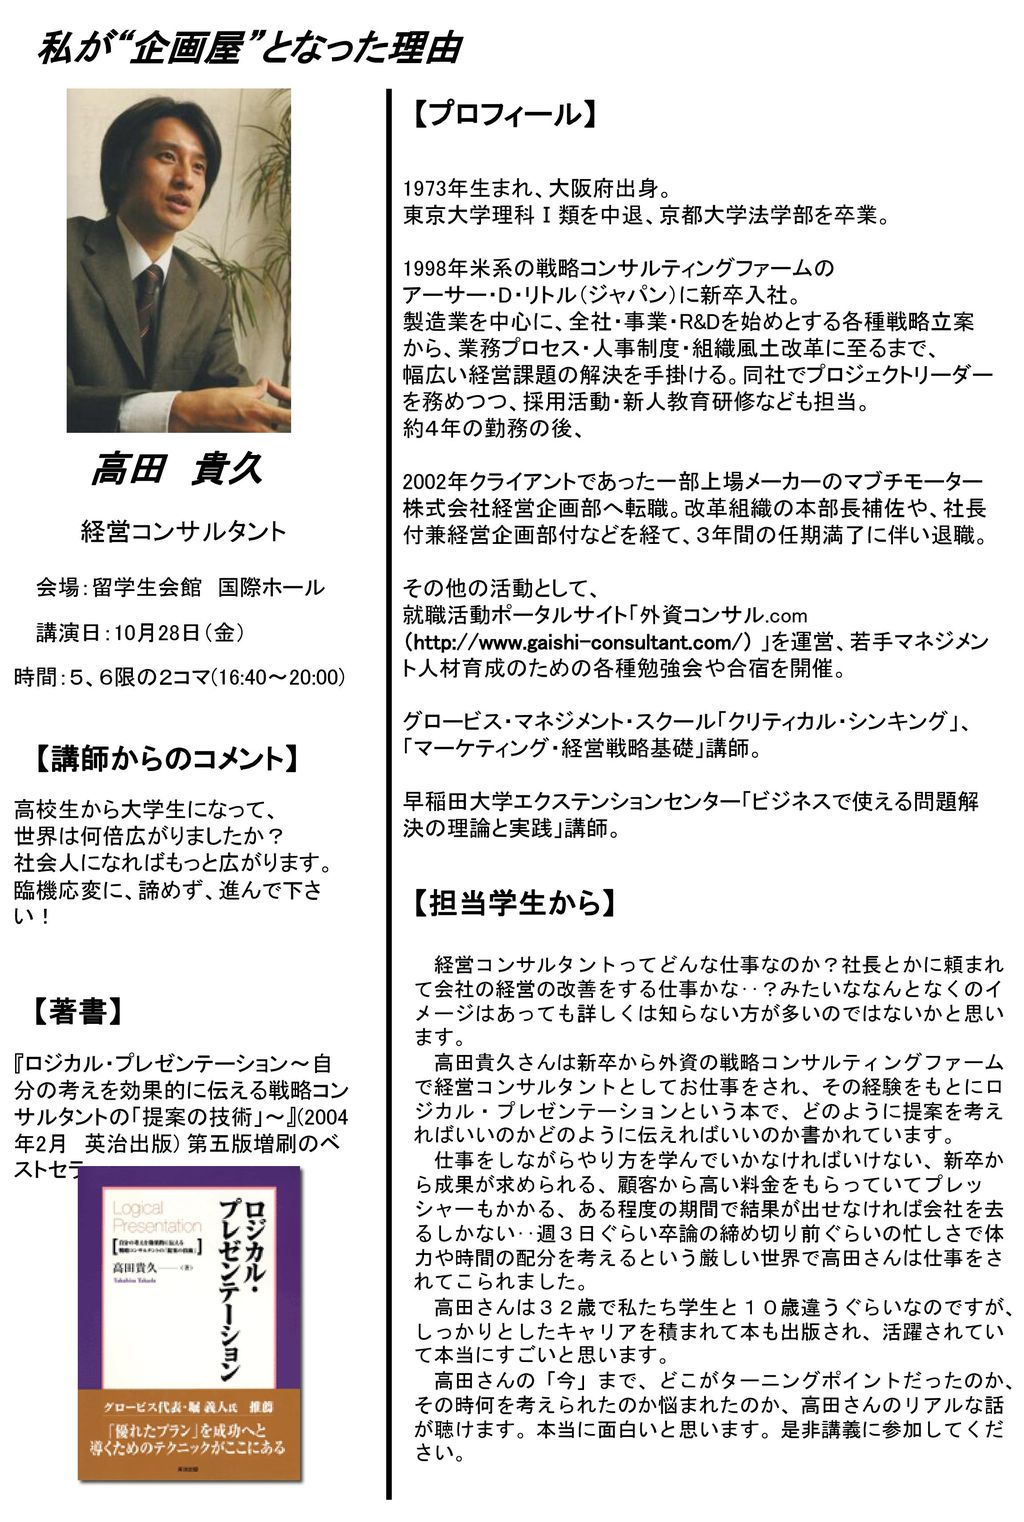 私が 企画屋 となった理由 高田 貴久 【プロフィール】 【講師からのコメント】 【担当学生から】 【著書】 経営コンサルタント